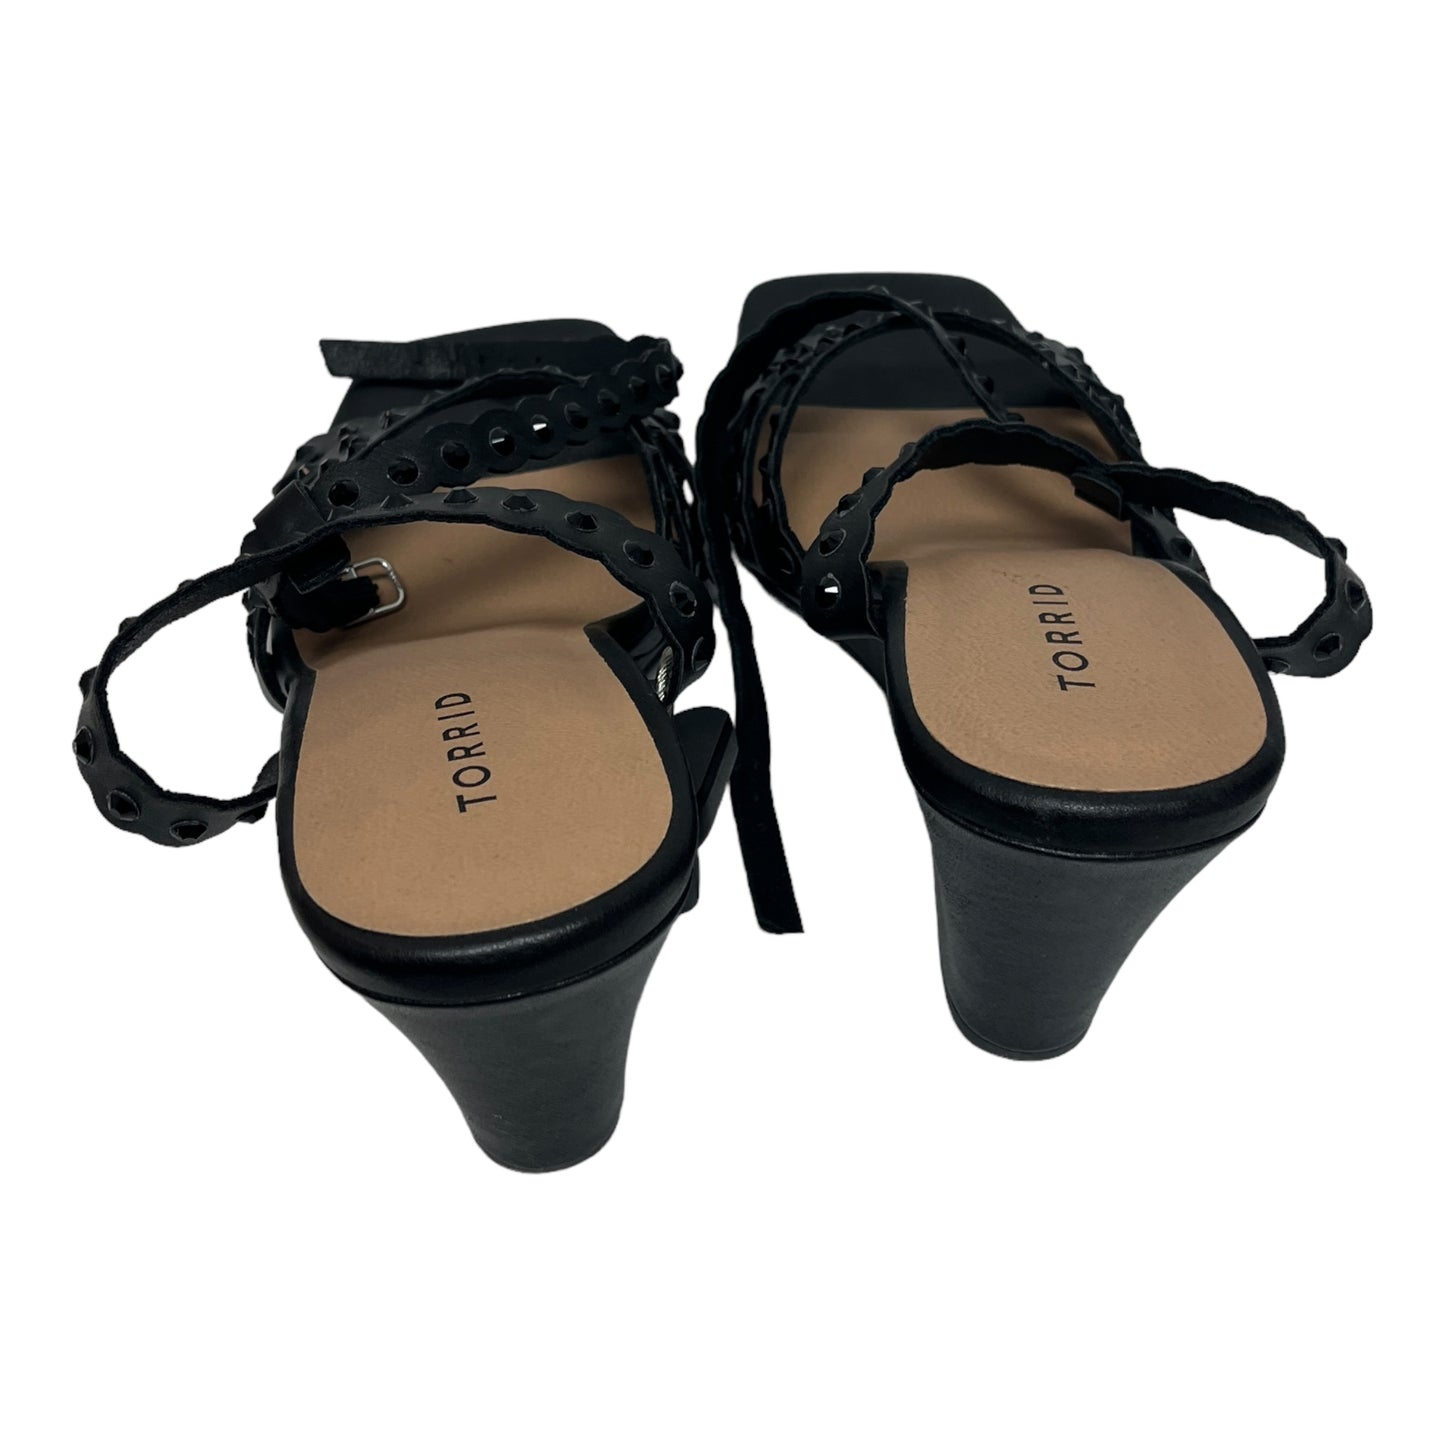 Sandals Heels Wedge By Torrid  Size: 11